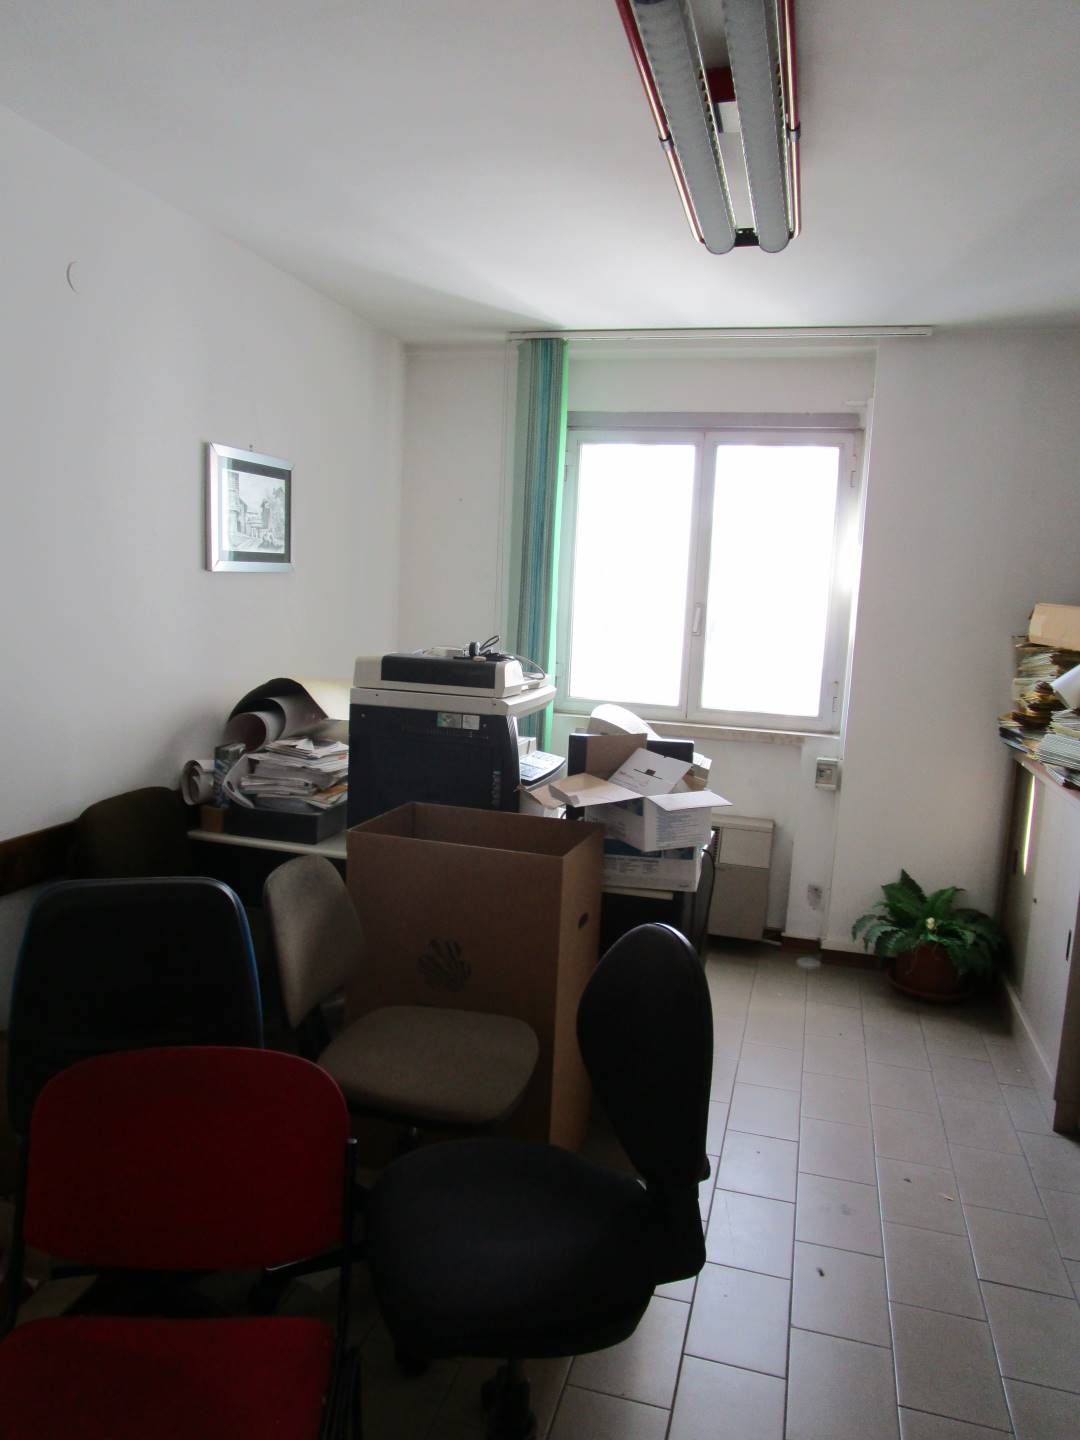 Ufficio in Affitto a Prato zona Repubblica - immagine 3